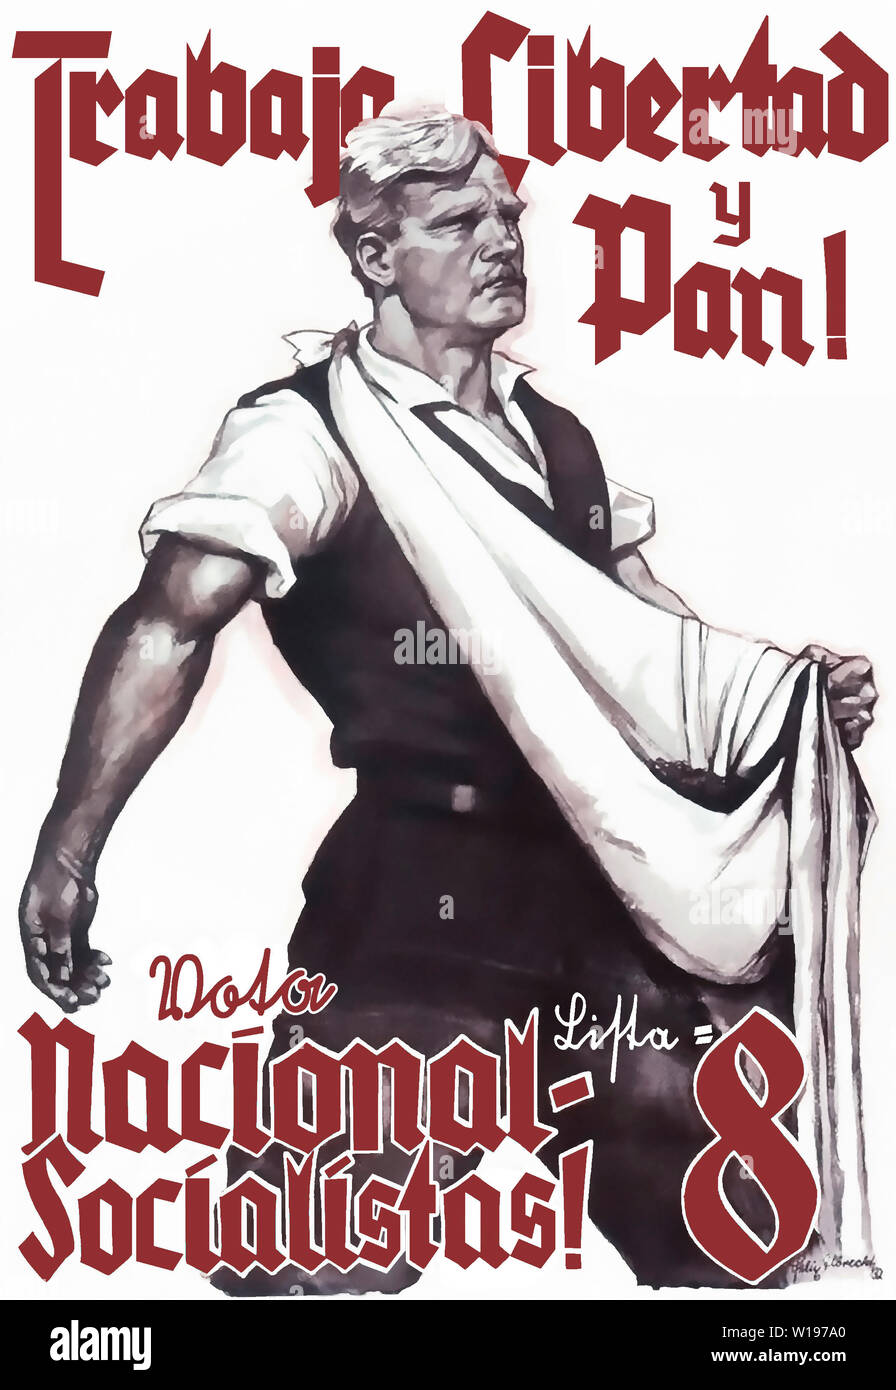 Arbeit, Freiheit und Brot! Wählt Liste 8 National-Sozialisten! (Translated to Spanish) Stock Photo